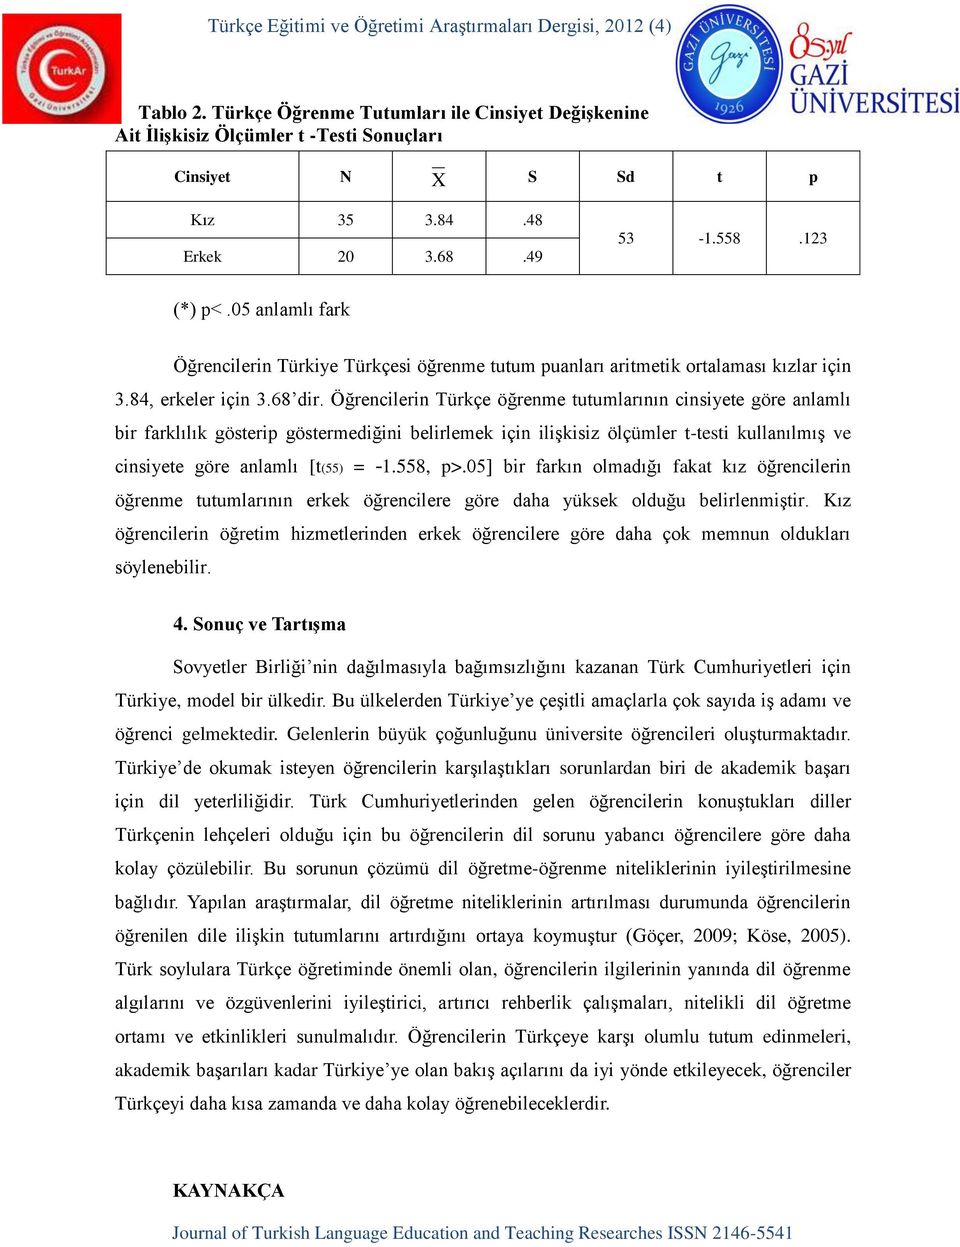 Öğrencilerin Türkçe öğrenme tutumlarının cinsiyete göre anlamlı bir farklılık gösterip göstermediğini belirlemek için ilişkisiz ölçümler t-testi kullanılmış ve cinsiyete göre anlamlı [t(55) = -1.